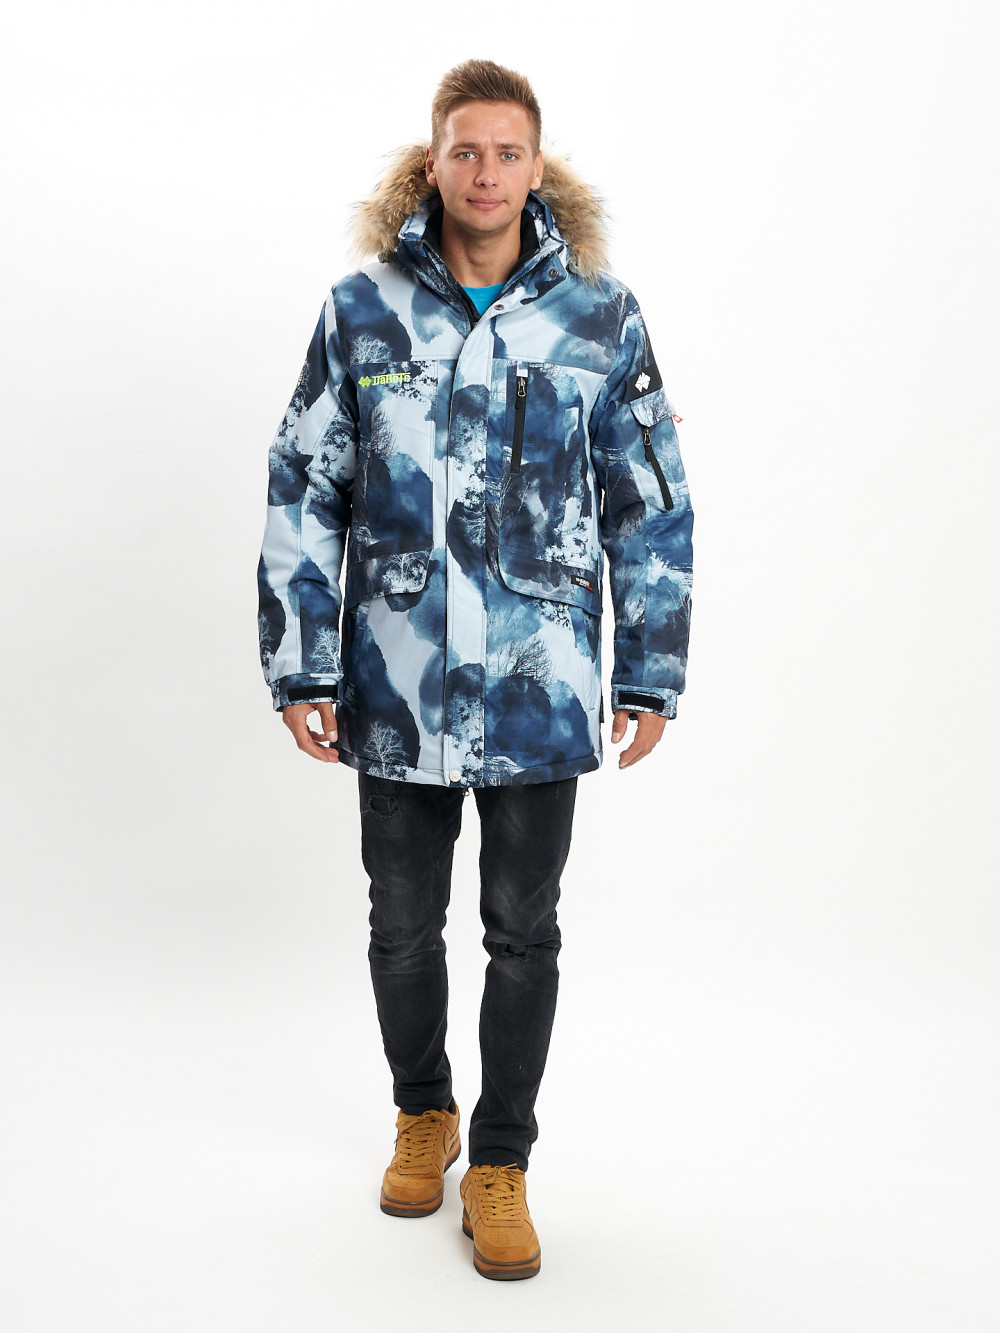 Купить оптом Mолодежная зимняя куртка мужская синего цвета 737S в Екатеринбурге